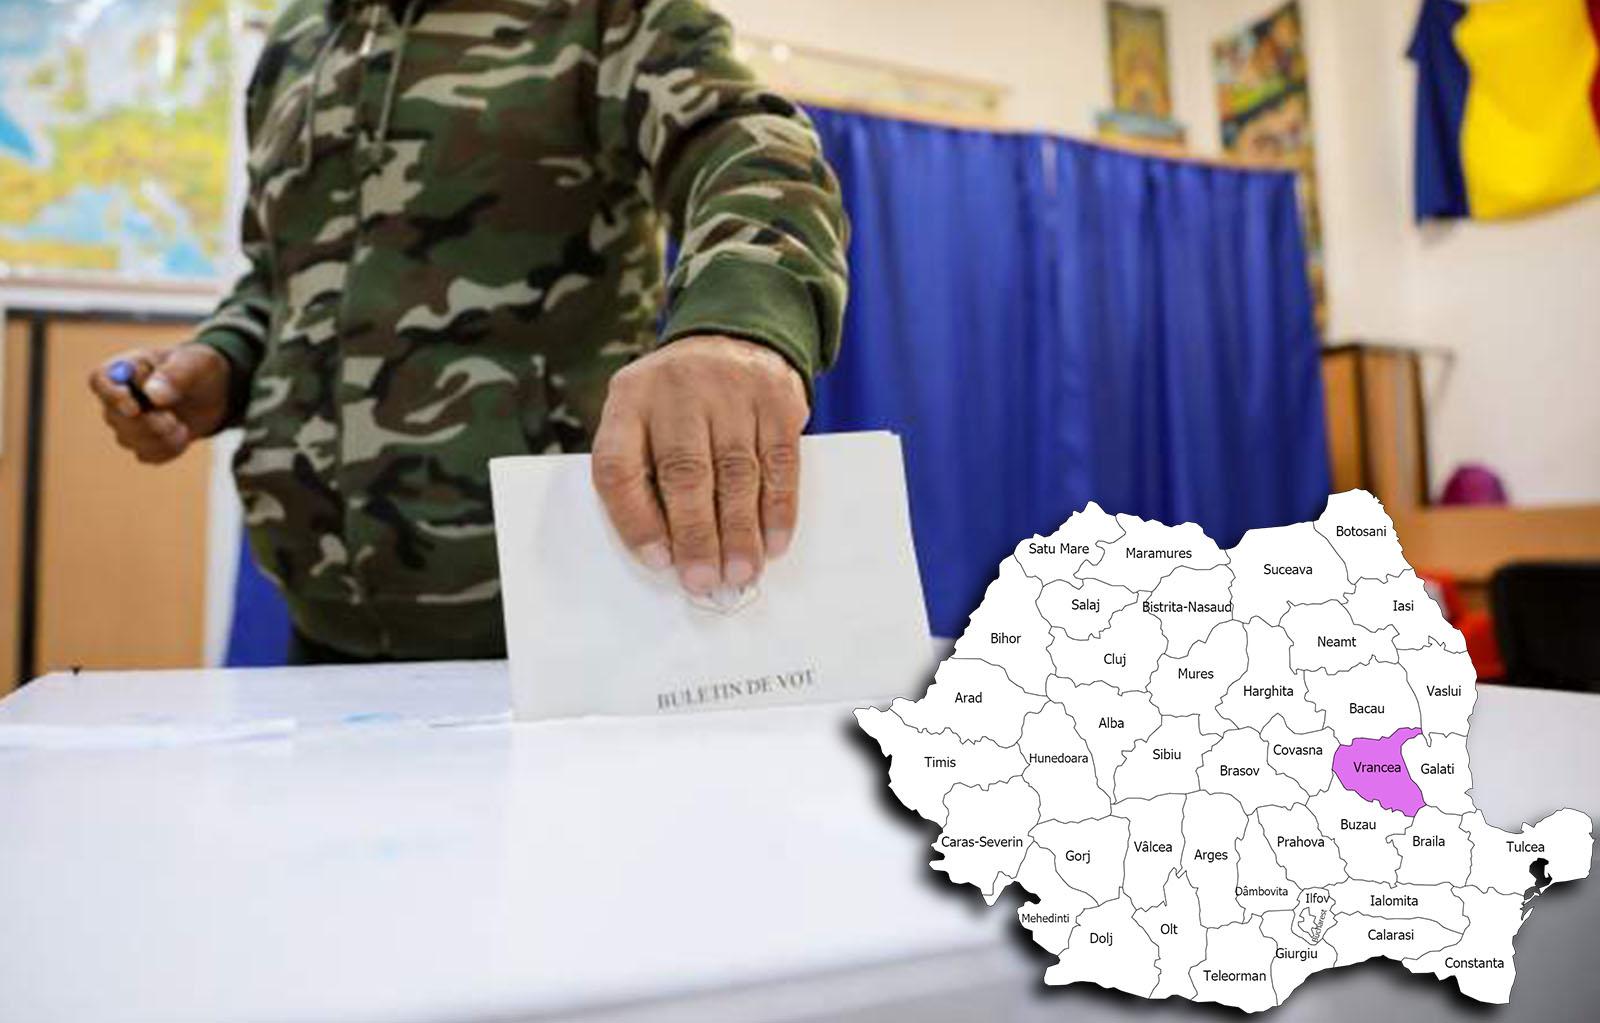 Rezultate alegeri parlamentare 2020 în județul Vrancea. Cine câștigă alegerile pentru Senat și Camera Deputaților